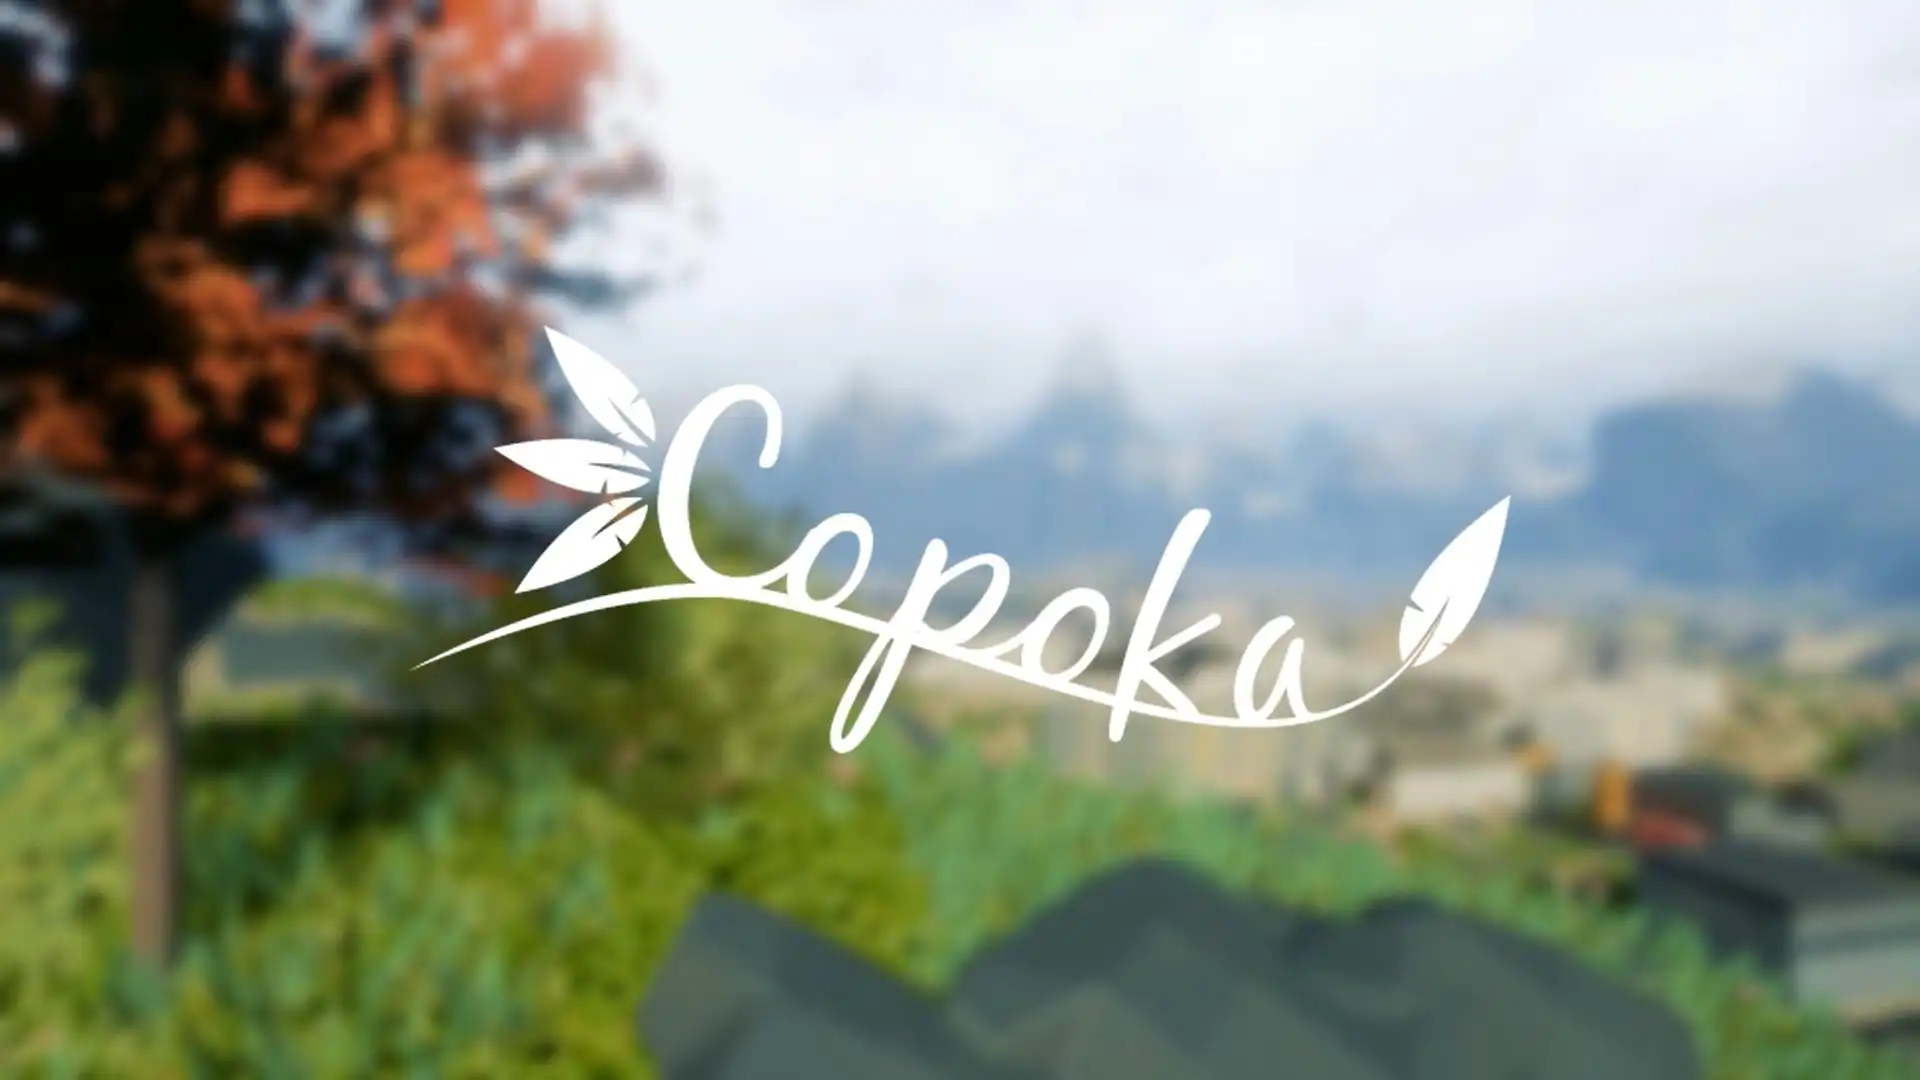 Обзор игры Copoka: Взгляд на мир сквозь крылья птицы